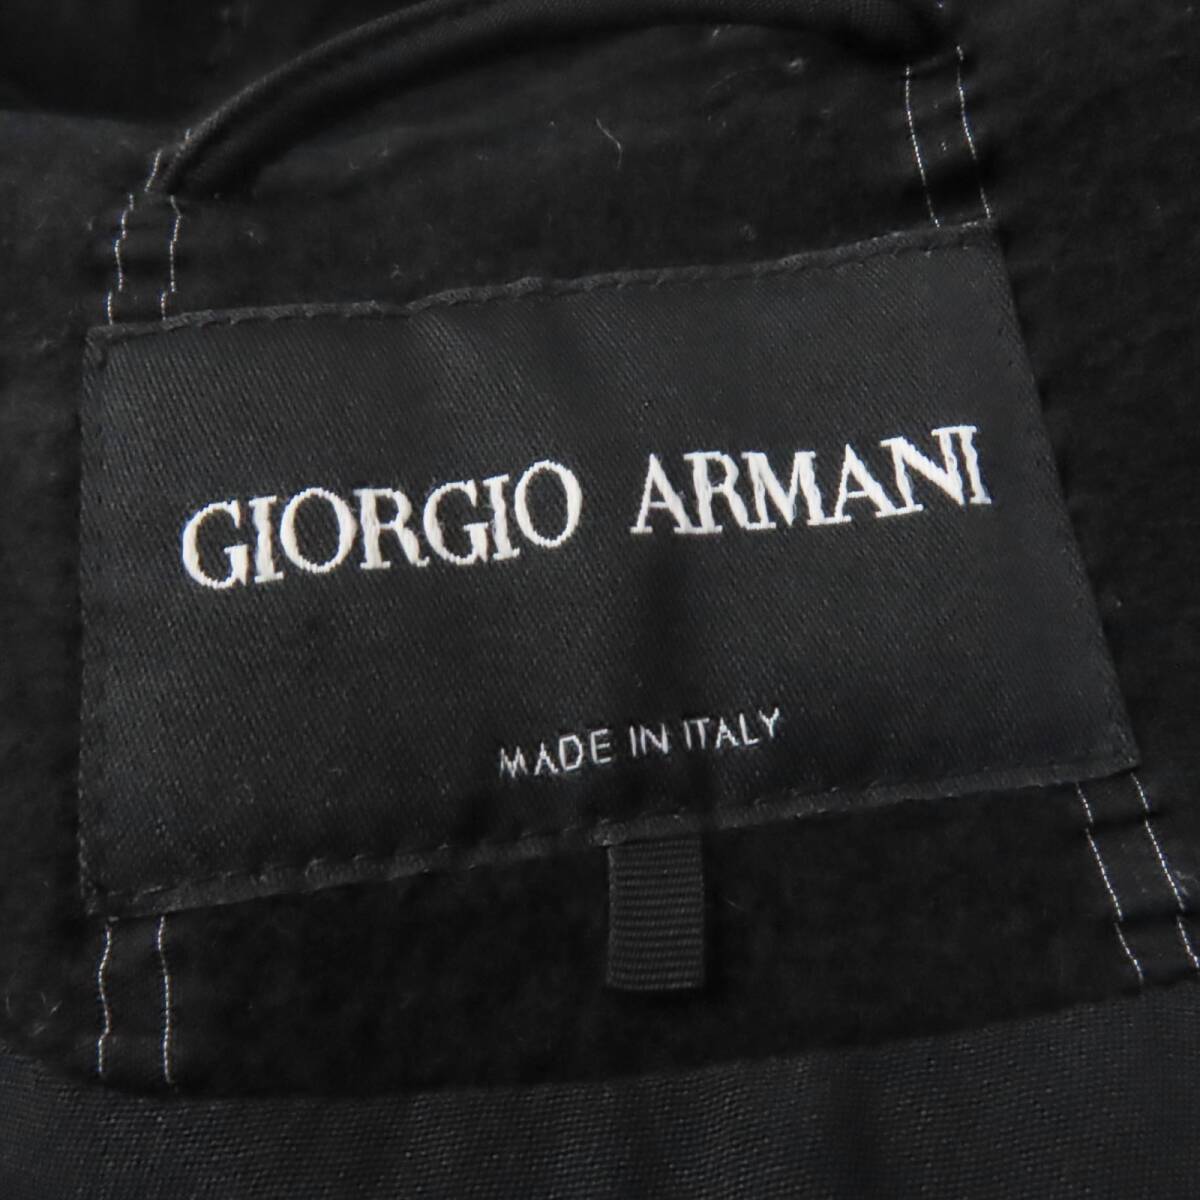  прекрасный товар *GIORGIO ARMANIjoru geo Armani 2020 год производства кашемир шелк .A линия пальто черный 40 стандартный товар женский 